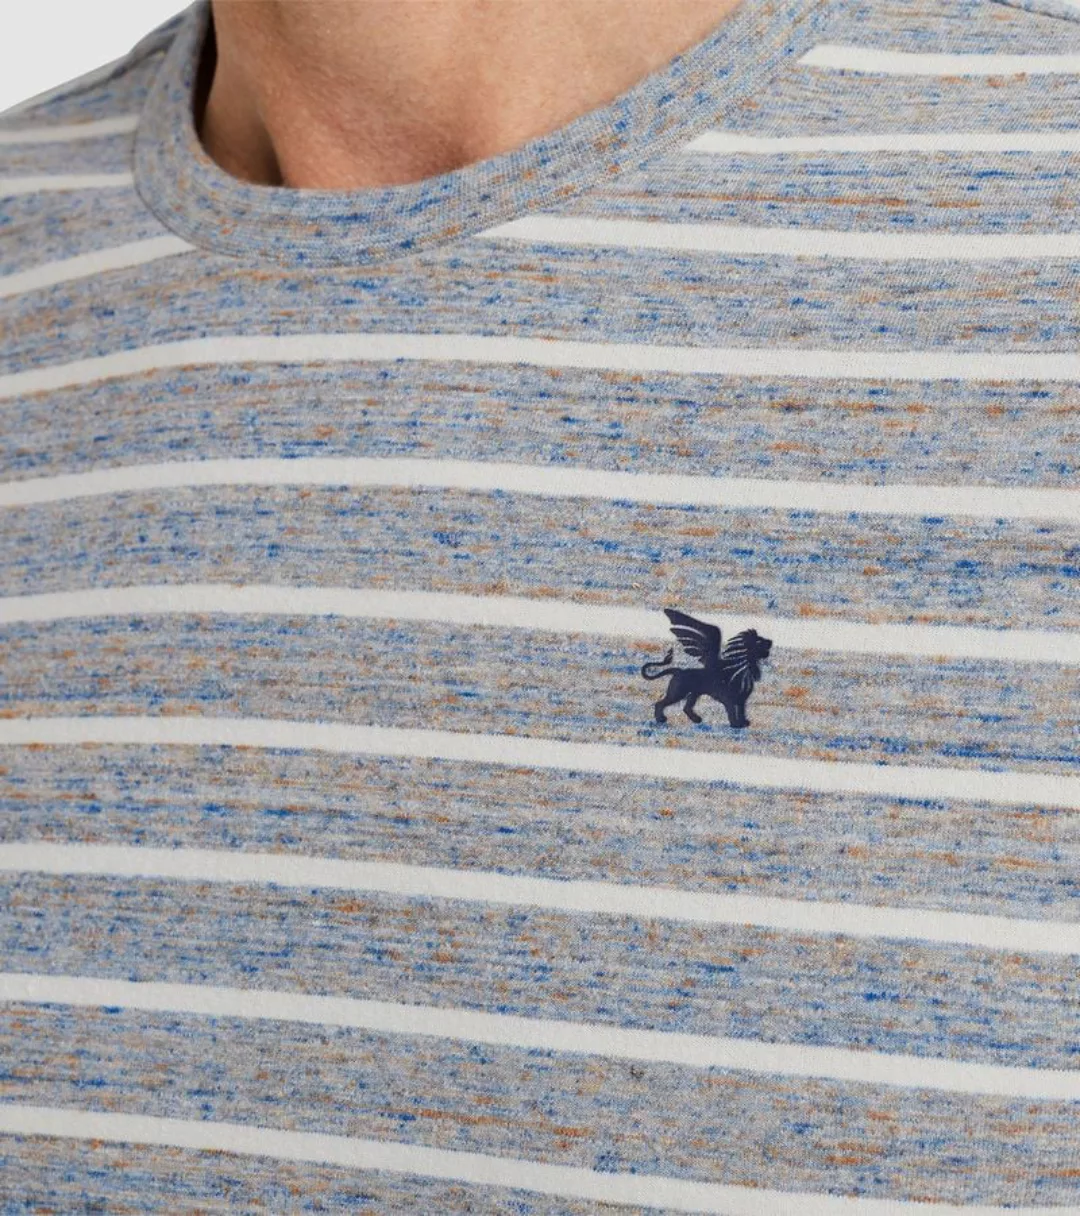 Vanguard T-Shirt Streifen Grau Blau - Größe XXL günstig online kaufen